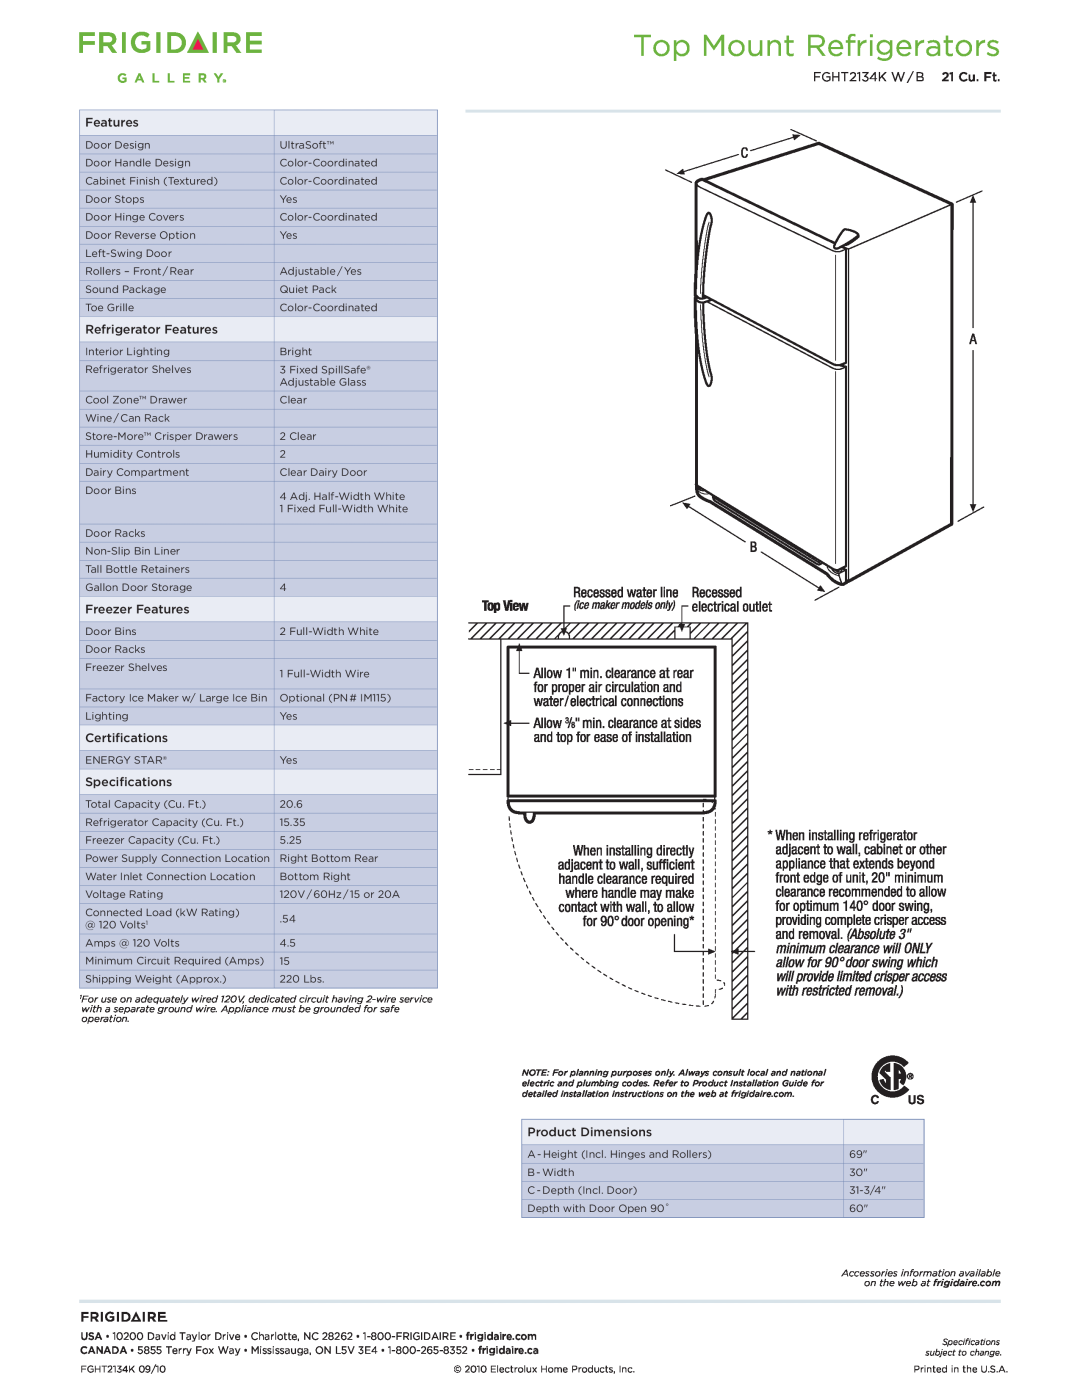 Frigidaire FGHT2134K W/B dimensions Top Mount Refrigerators, FGHT2134K W / B 21 Cu. Ft 